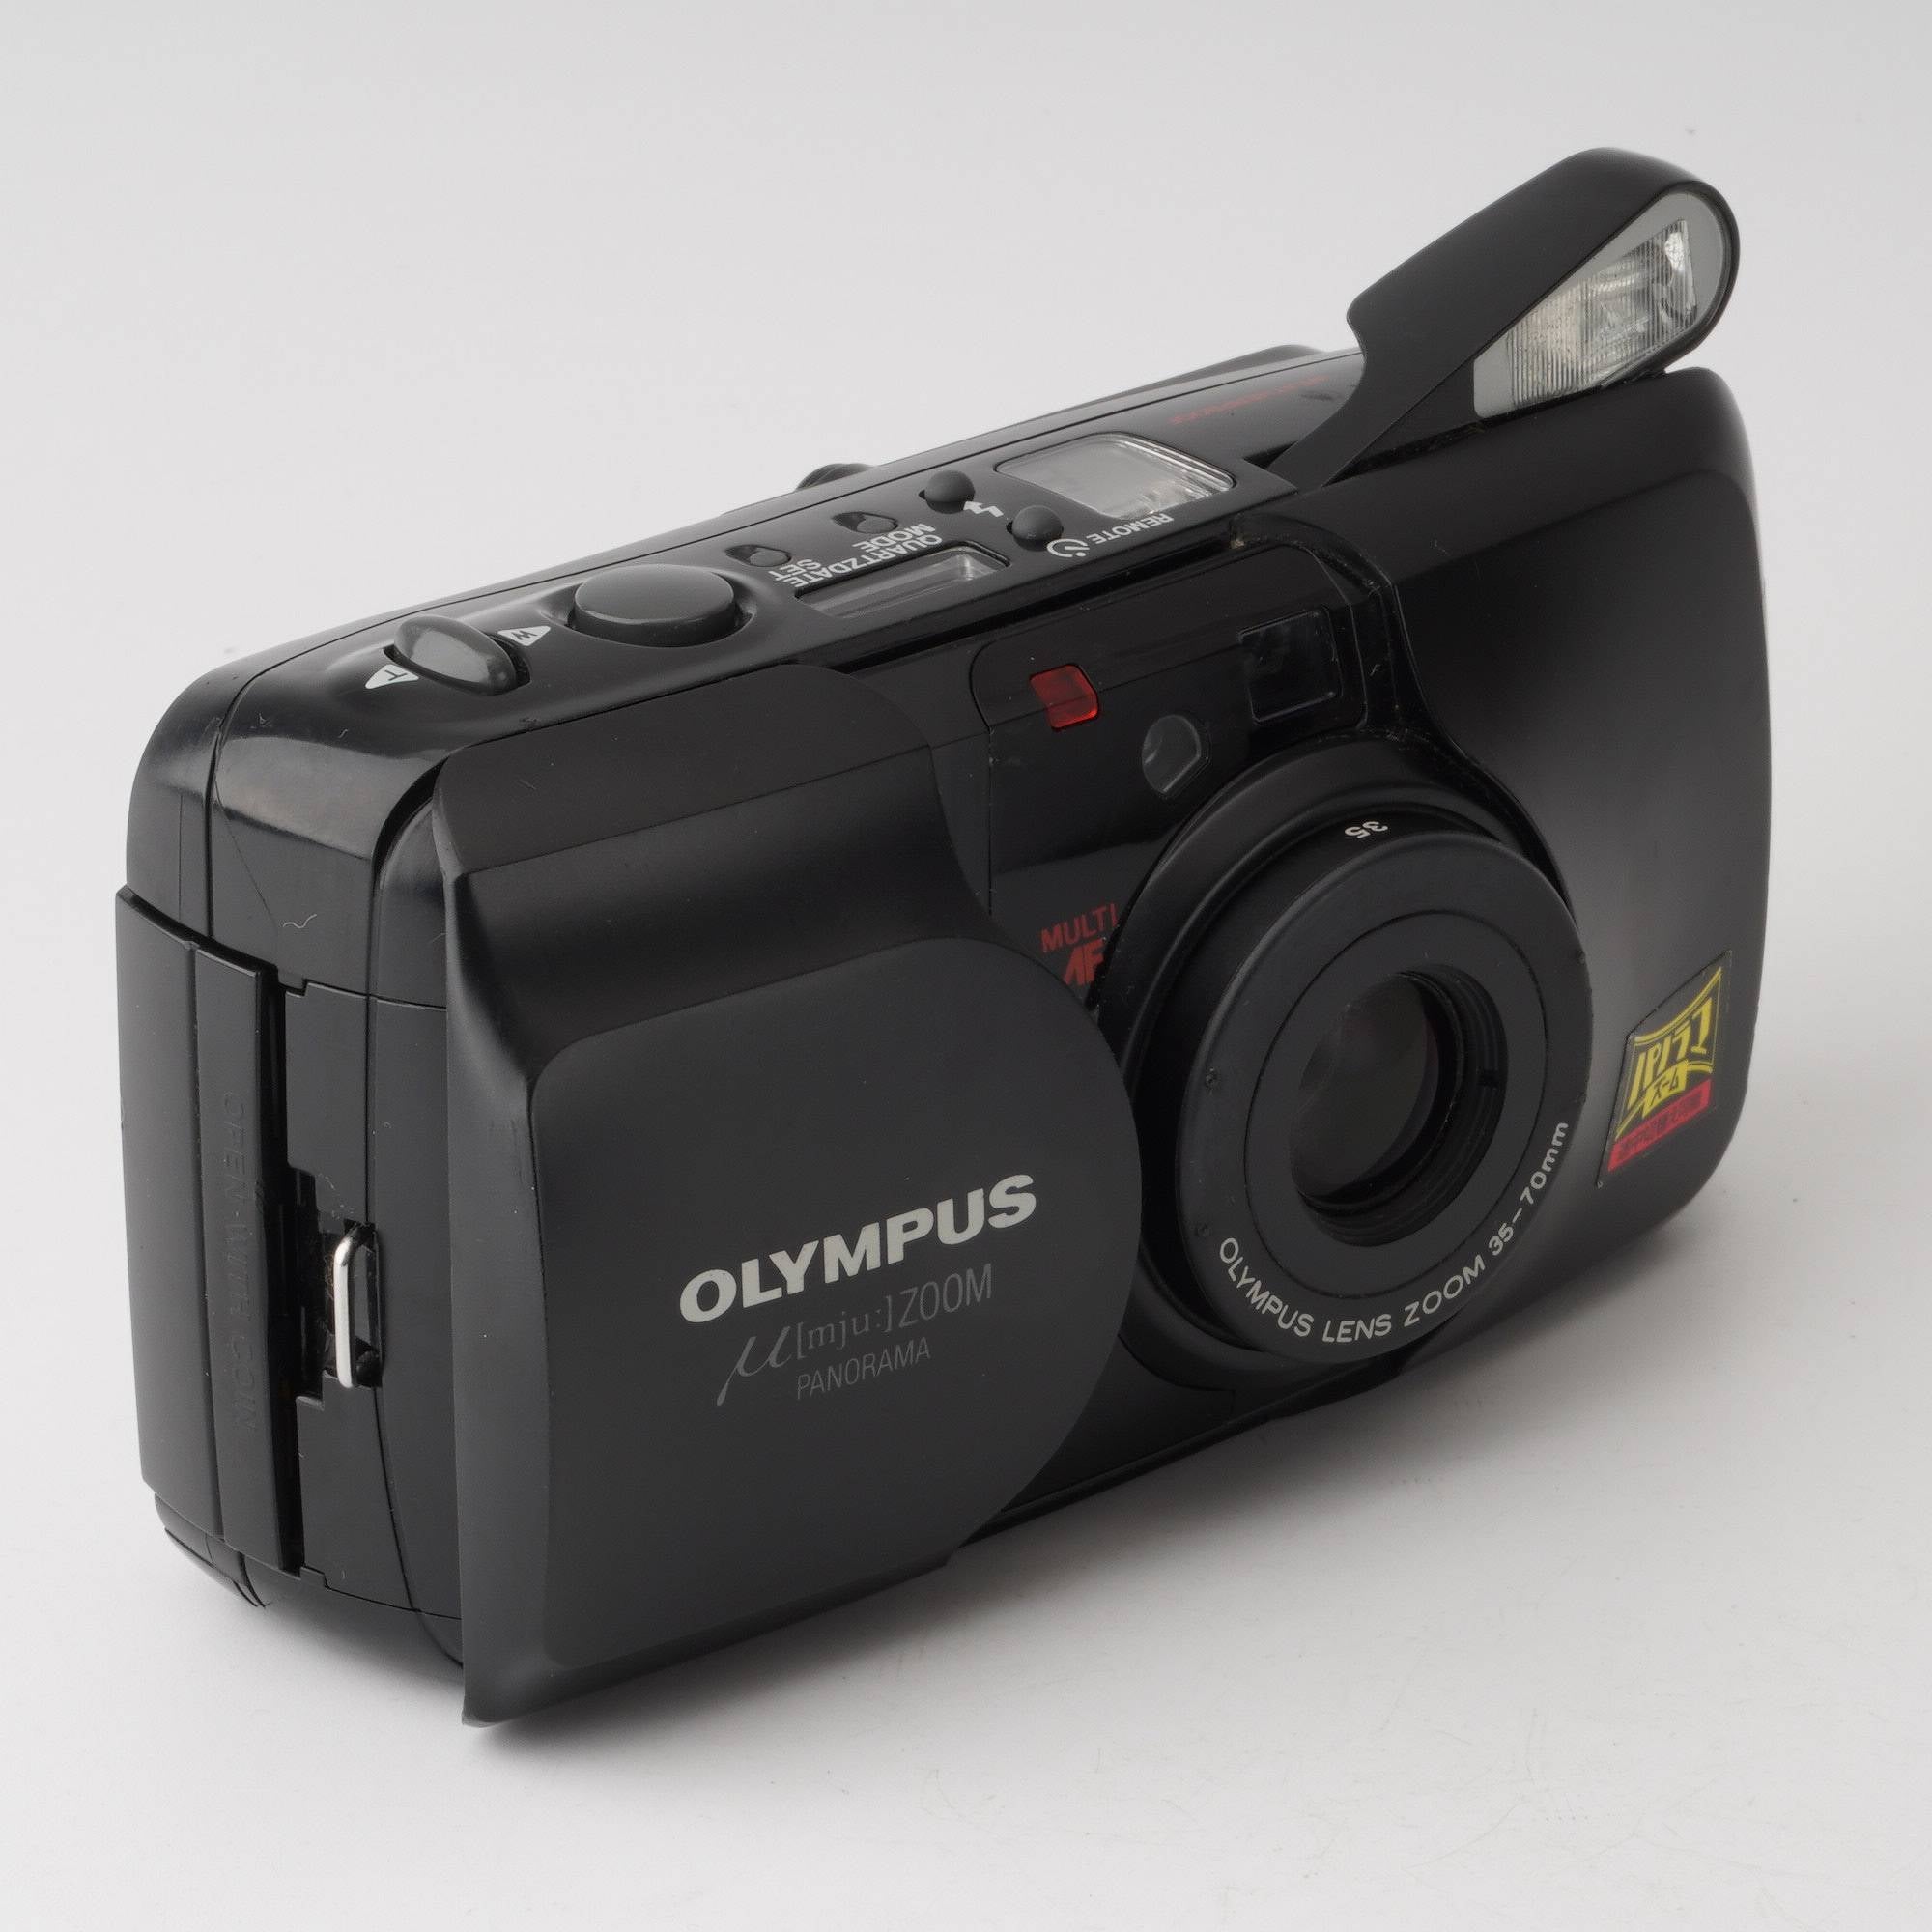 オリンパス動作確認済 OLYMPUS μ ZOOM panorama stylus - フィルムカメラ